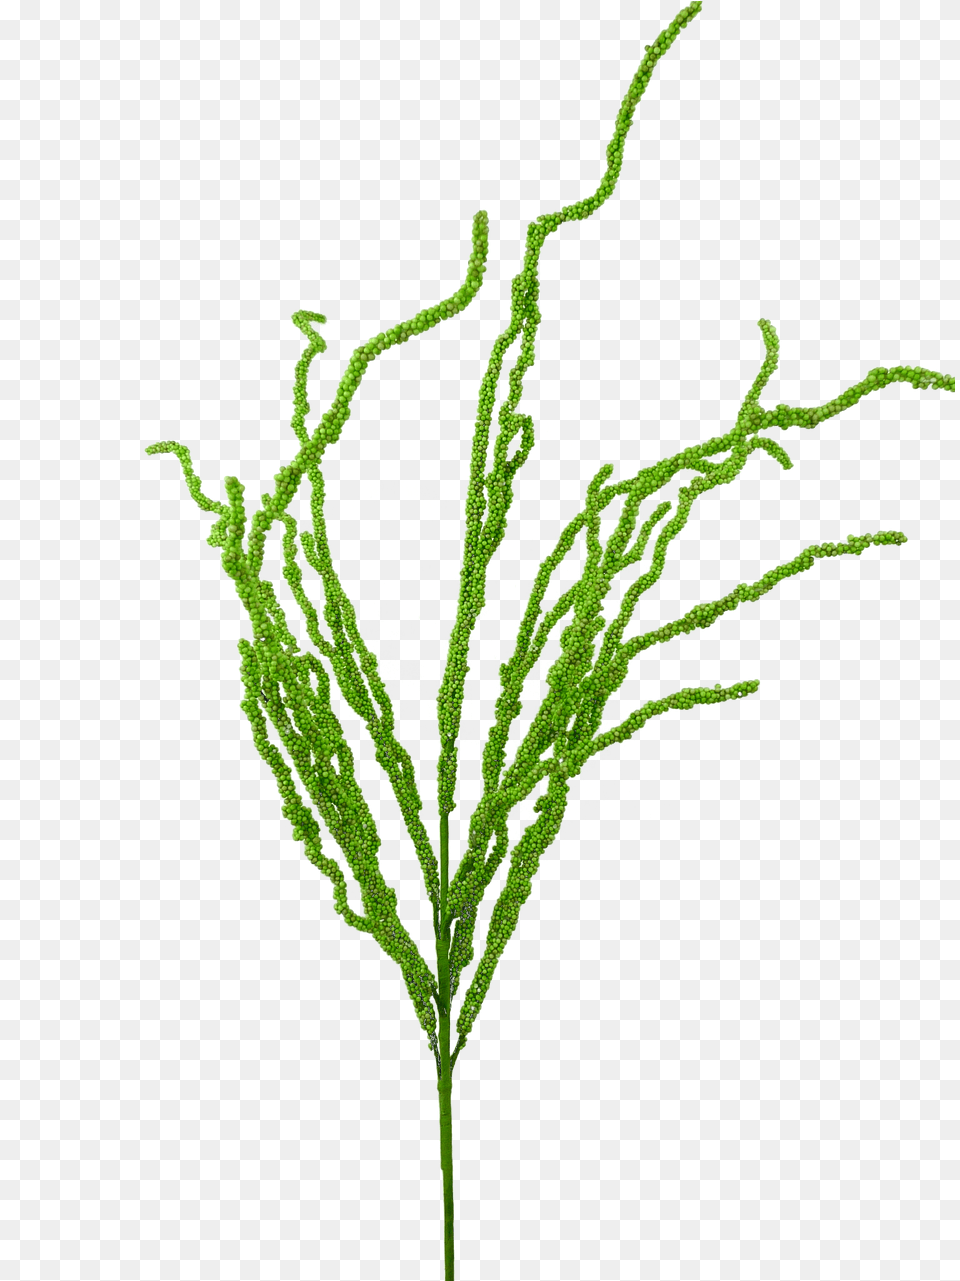 Grass, Fern, Leaf, Plant, Aquatic Png